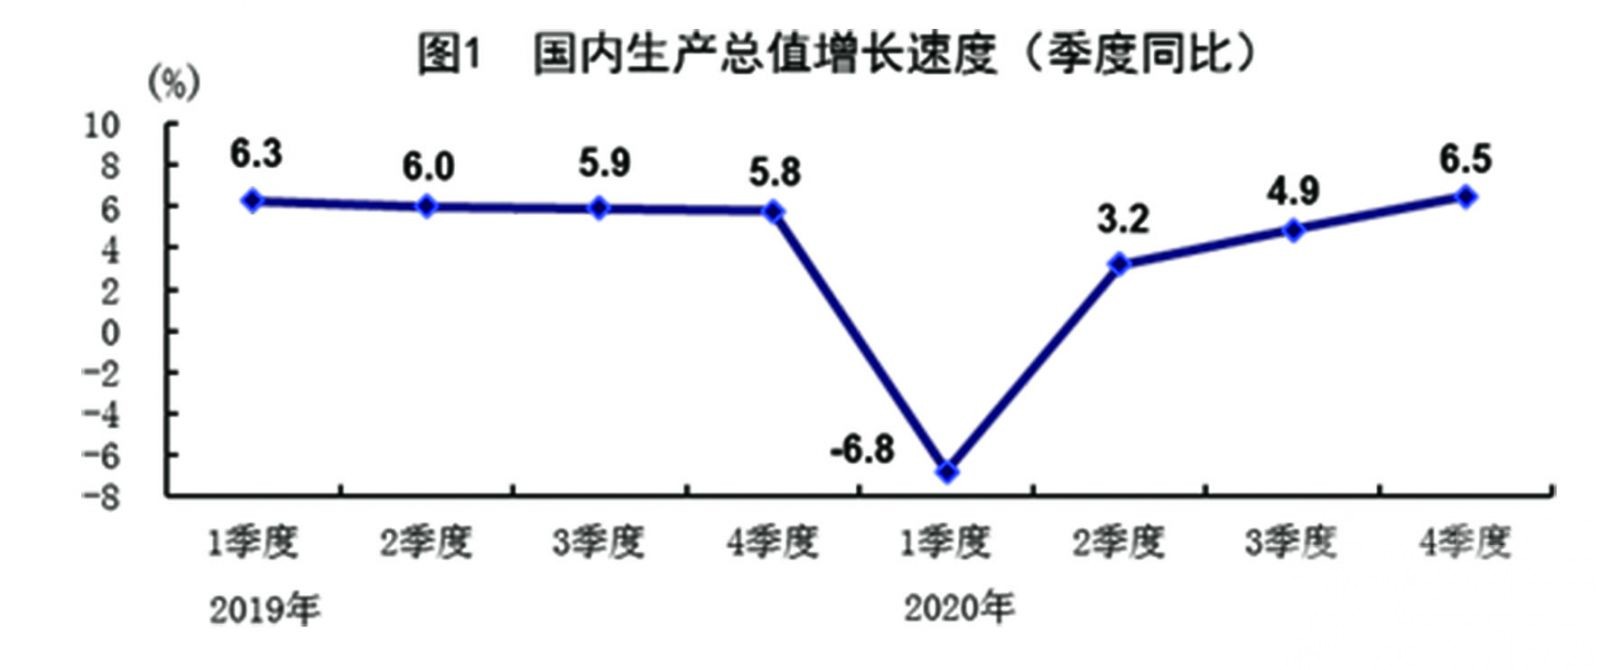 中國經濟逆勢增長2.3%